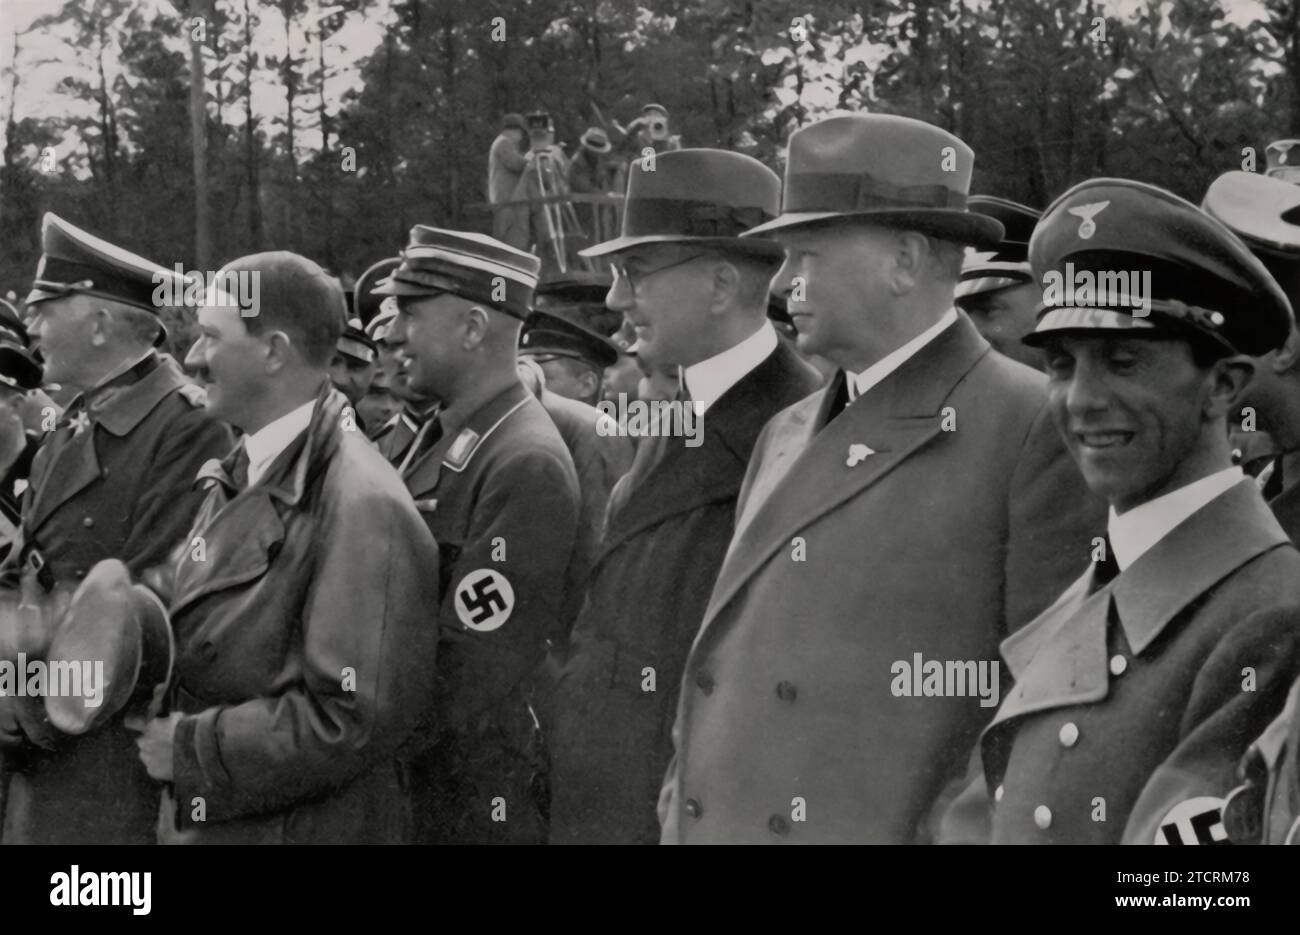 All'inaugurazione nel 1935 della sezione Reichsautobahn tra Francoforte e Darmstadt, si riuniscono figure chiave, illustrando l'enfasi della leadership nazista sulle infrastrutture. Da sinistra a destra, sono presenti il ministro della guerra del Reich von Blomberg, Adolf Hitler, l'ispettore generale Dr. Todt, il presidente della Reichsbank Dr. Schacht, il direttore della Reichsbahn Dr. Dorpmüller e il ministro del Reich Dr. Goebbels. Questa assemblea di alti funzionari sottolinea l'investimento del regime nel progetto autobahn, un simbolo del progresso tecnologico e del progresso nazionale. Foto Stock